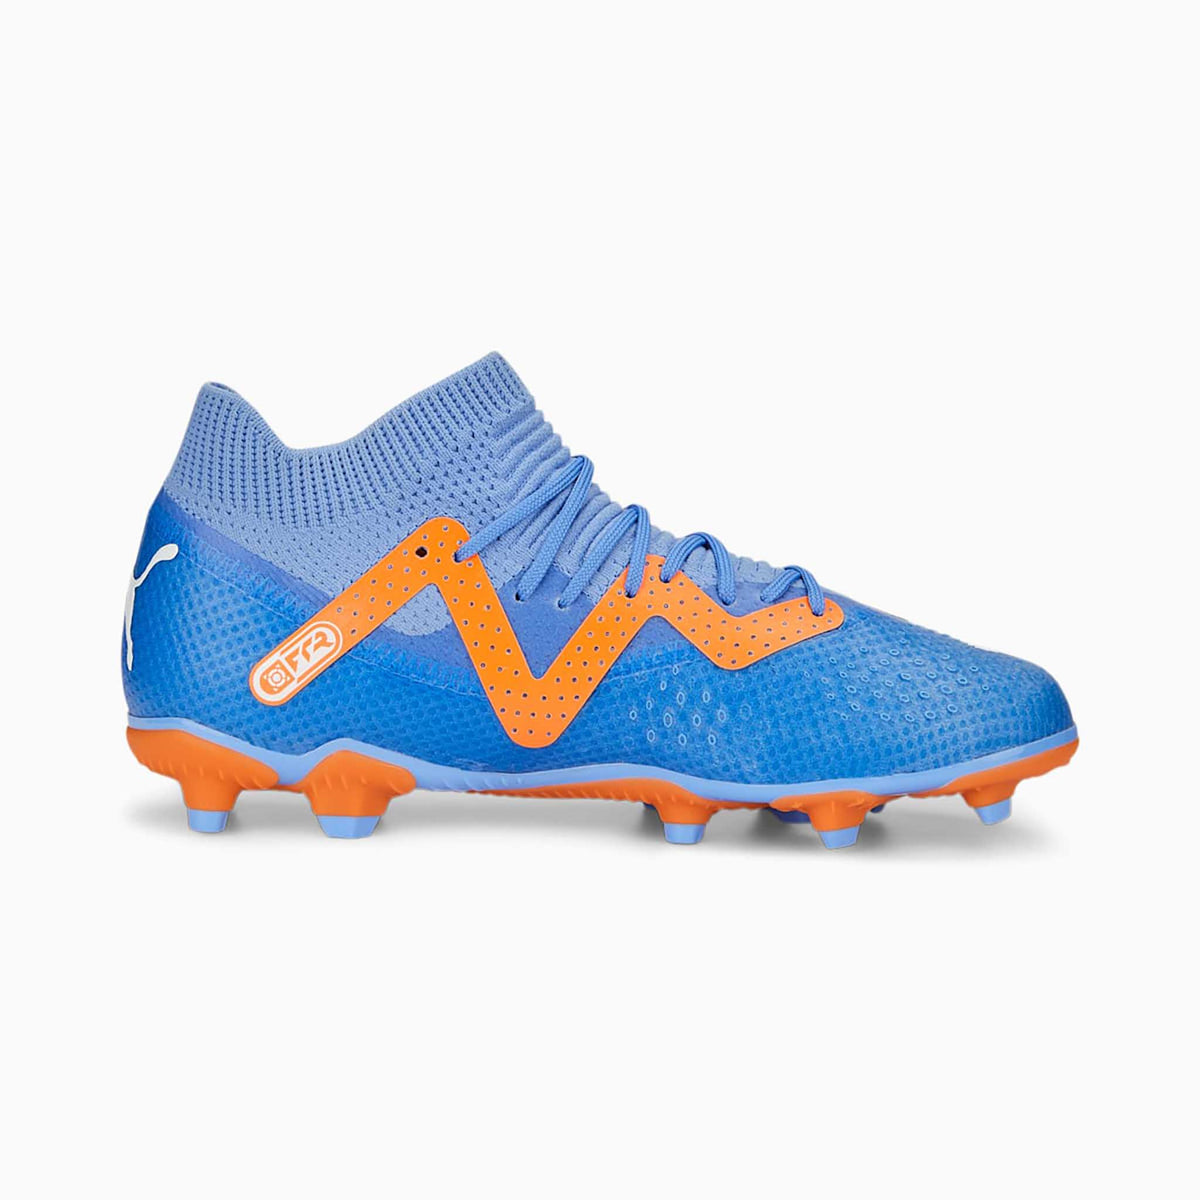 Puma Future Pro FG/AG chaussures de soccer à crampons enfant lateral- blue glimmer white orange